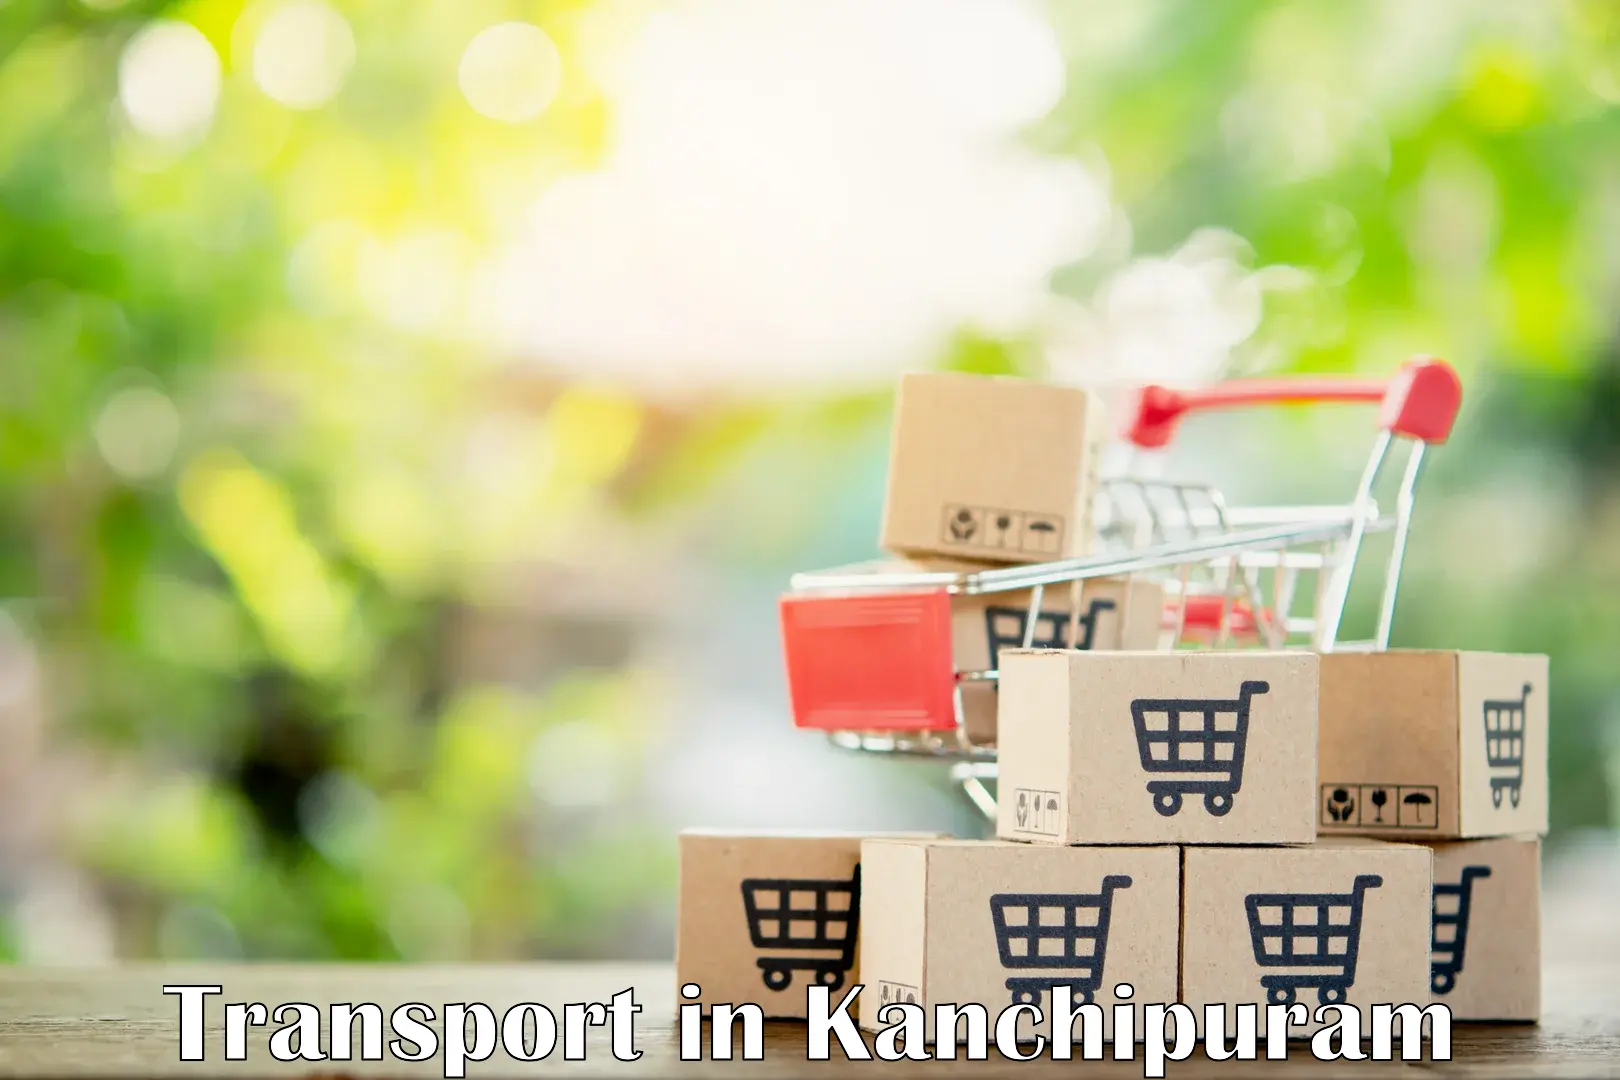 Online transport in Kanchipuram